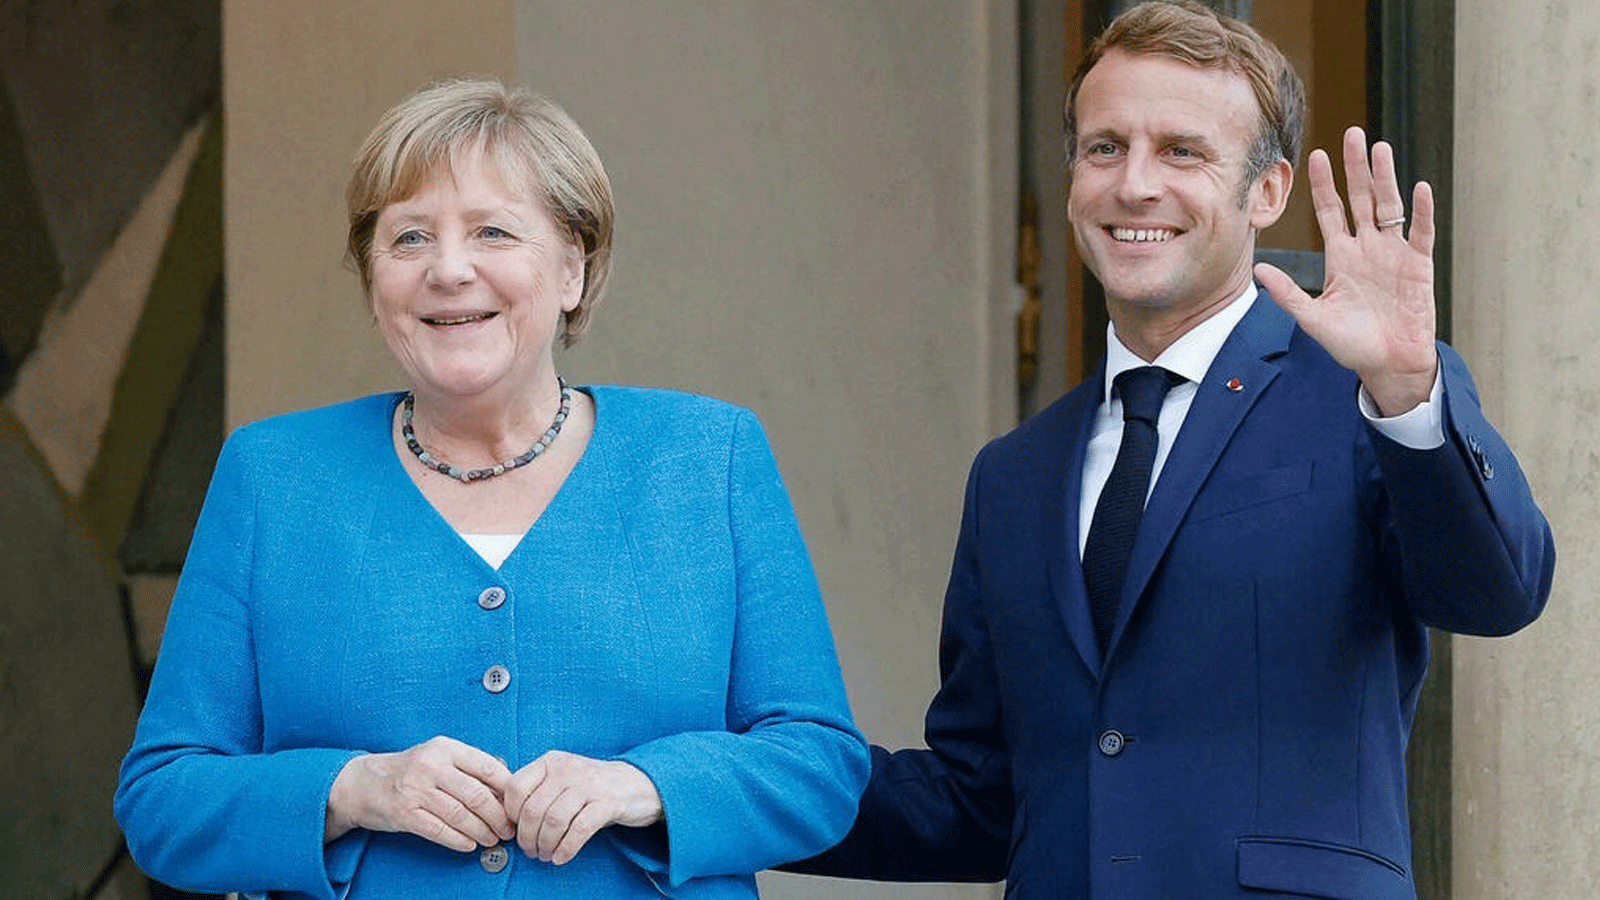 المستشارة الألمانية أنجيلا ميركل والرئيس الفرنسي إيمانويل ماكرون في قصر الإليزيه/ باريس. في 16 أيلول/ سبتمبر 2021